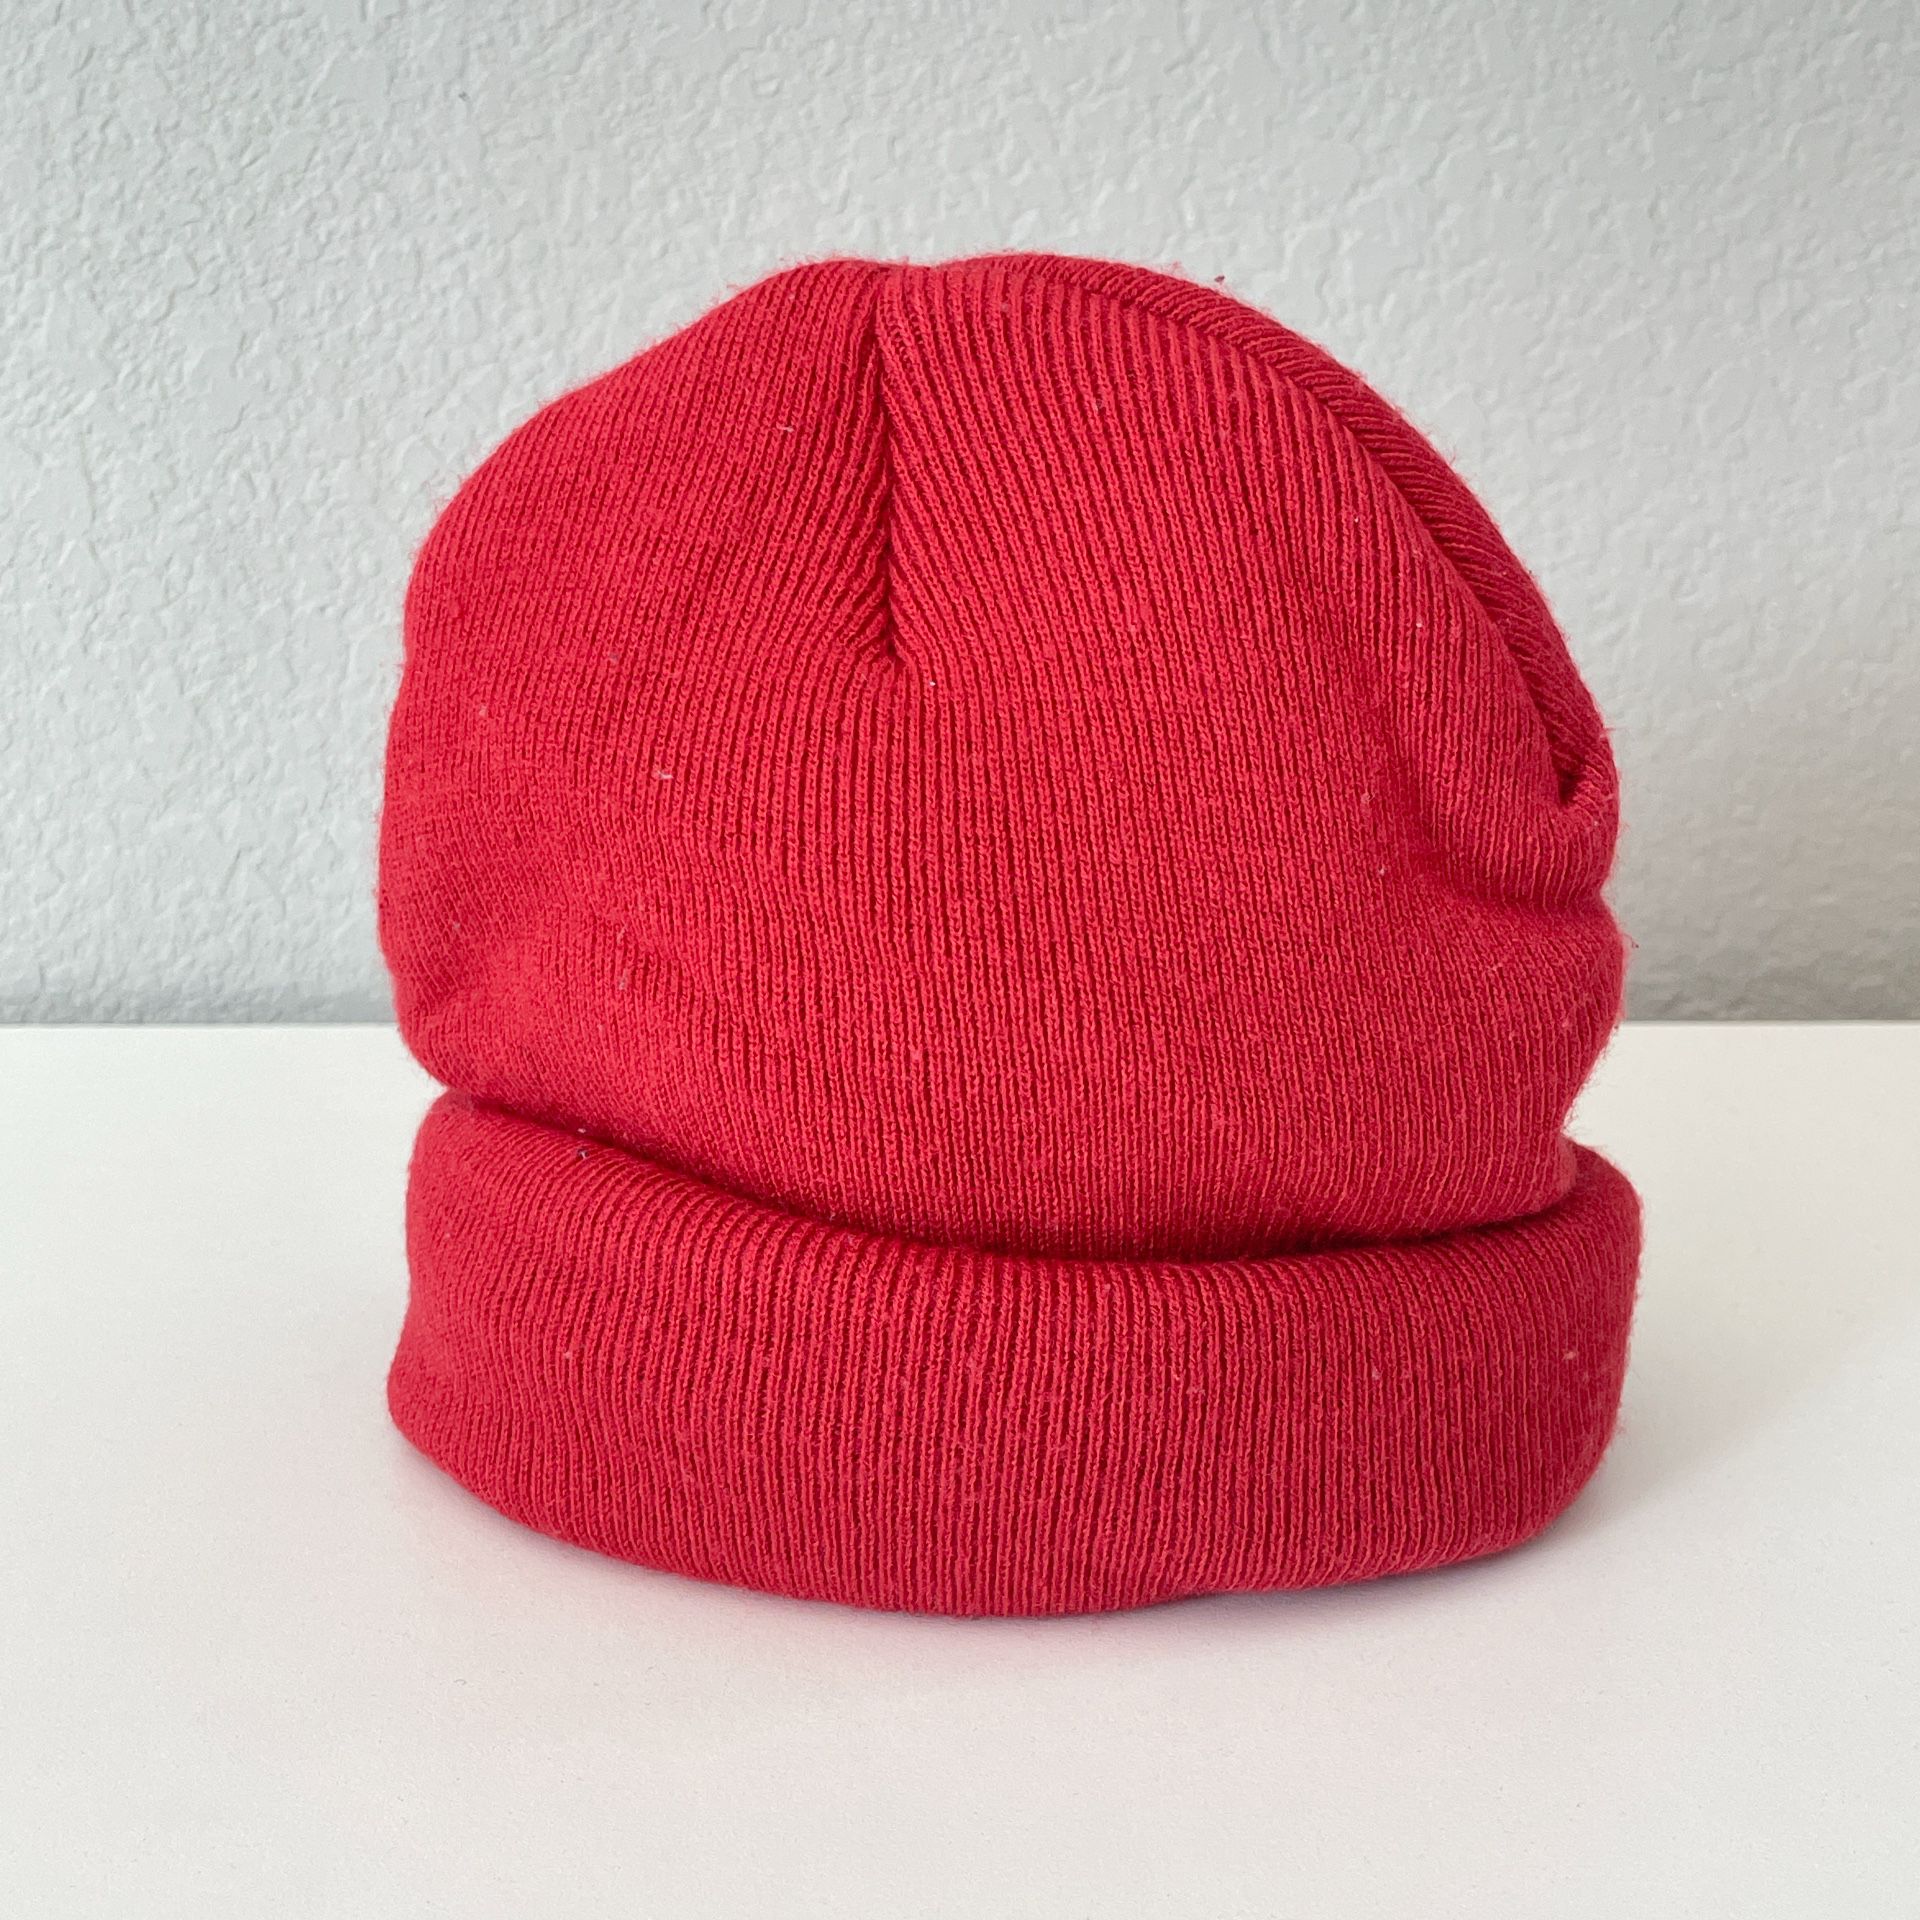 Unisex Warm Winter Knit Cuff Beanie Cap Daily Ski Hat Men Women Red Quilted Hat